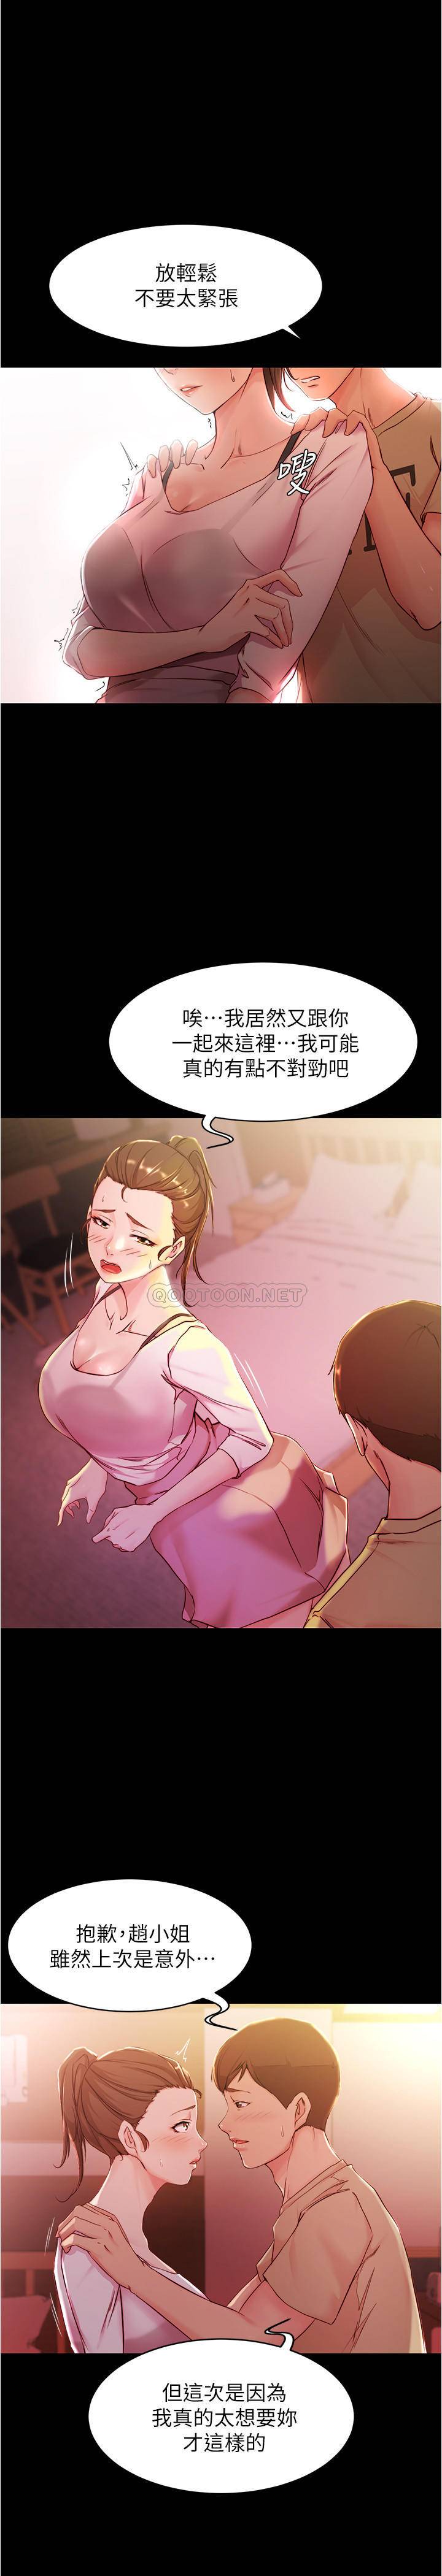 韩国污漫画 小褲褲筆記 第25话 - Q弹诱人的美尻… 10